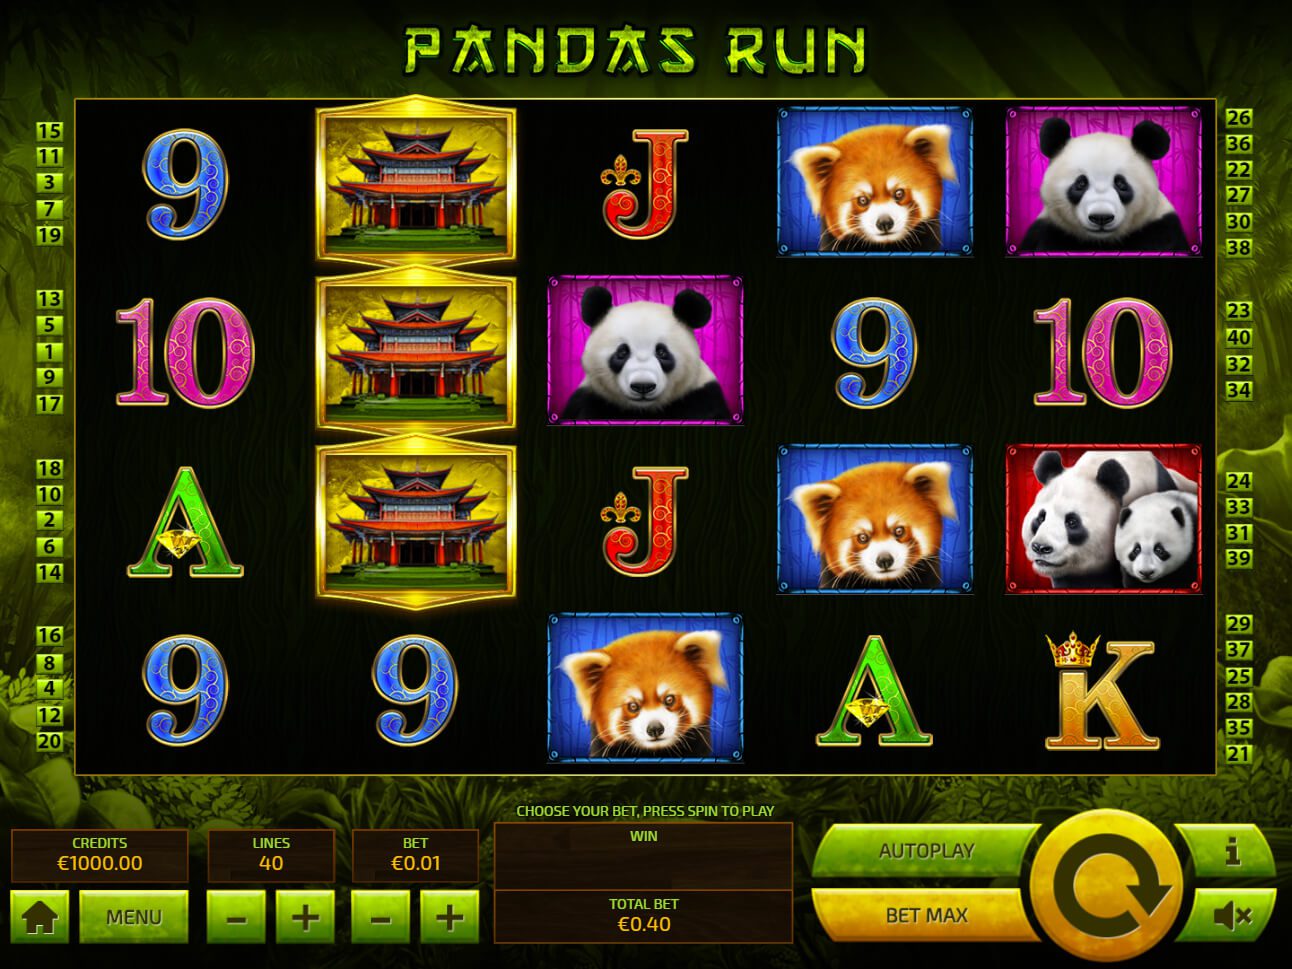 Panda's Run reels